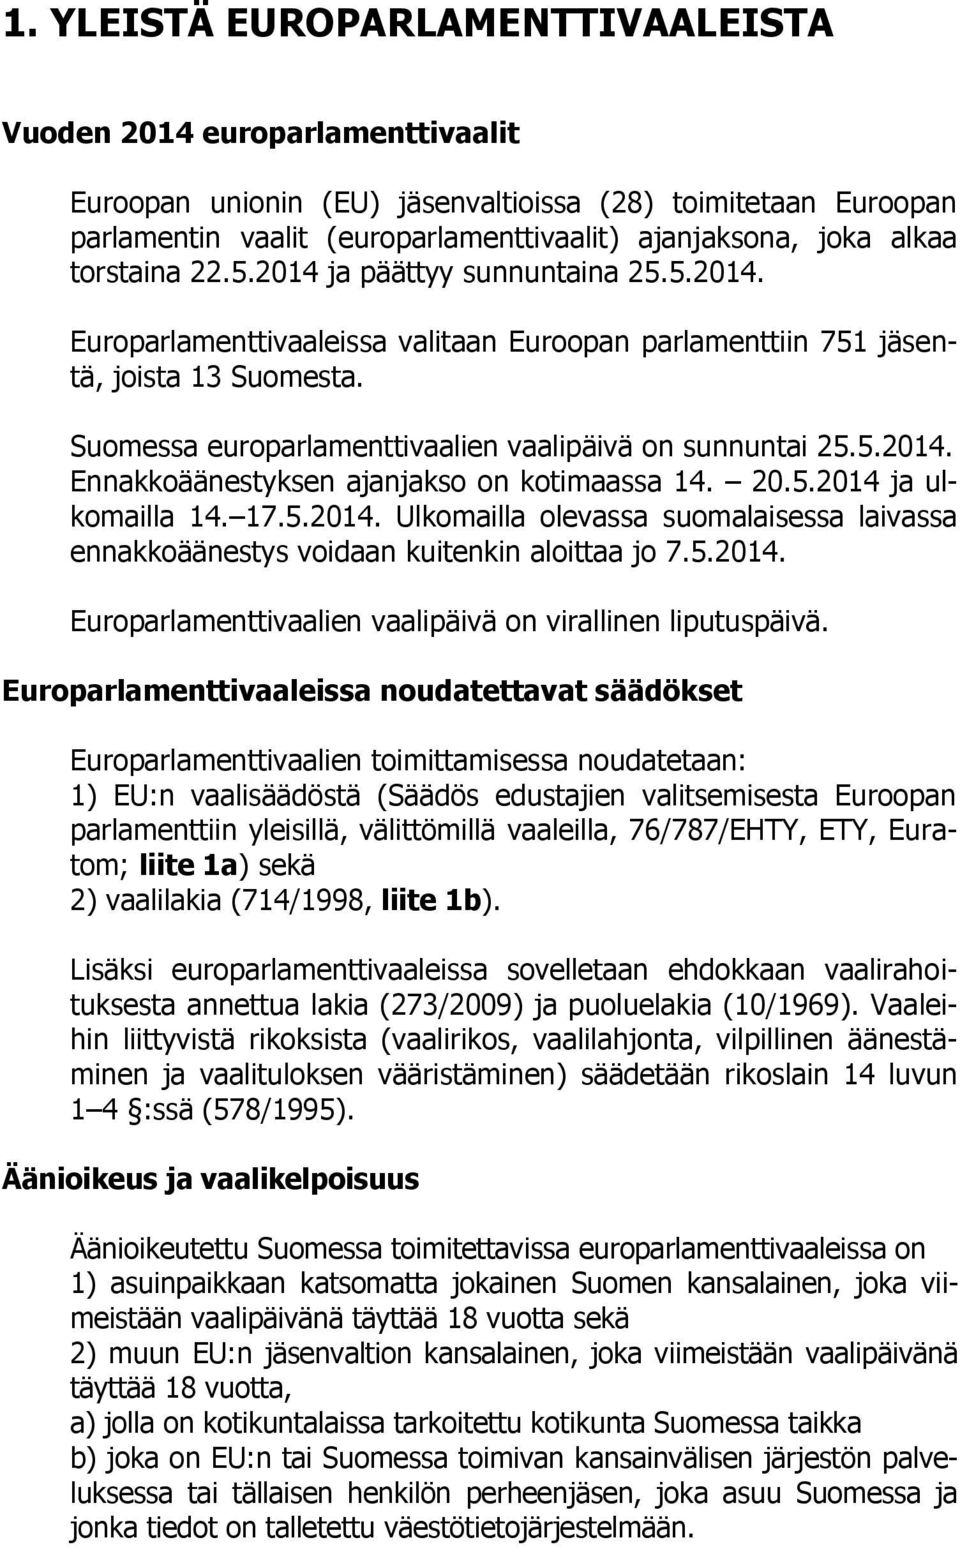 Suomessa europarlamenttivaalien vaalipäivä on sunnuntai 25.5.2014. Ennakkoäänestyksen ajanjakso on kotimaassa 14. 20.5.2014 ja ulkomailla 14. 17.5.2014. Ulkomailla olevassa suomalaisessa laivassa ennakkoäänestys voidaan kuitenkin aloittaa jo 7.